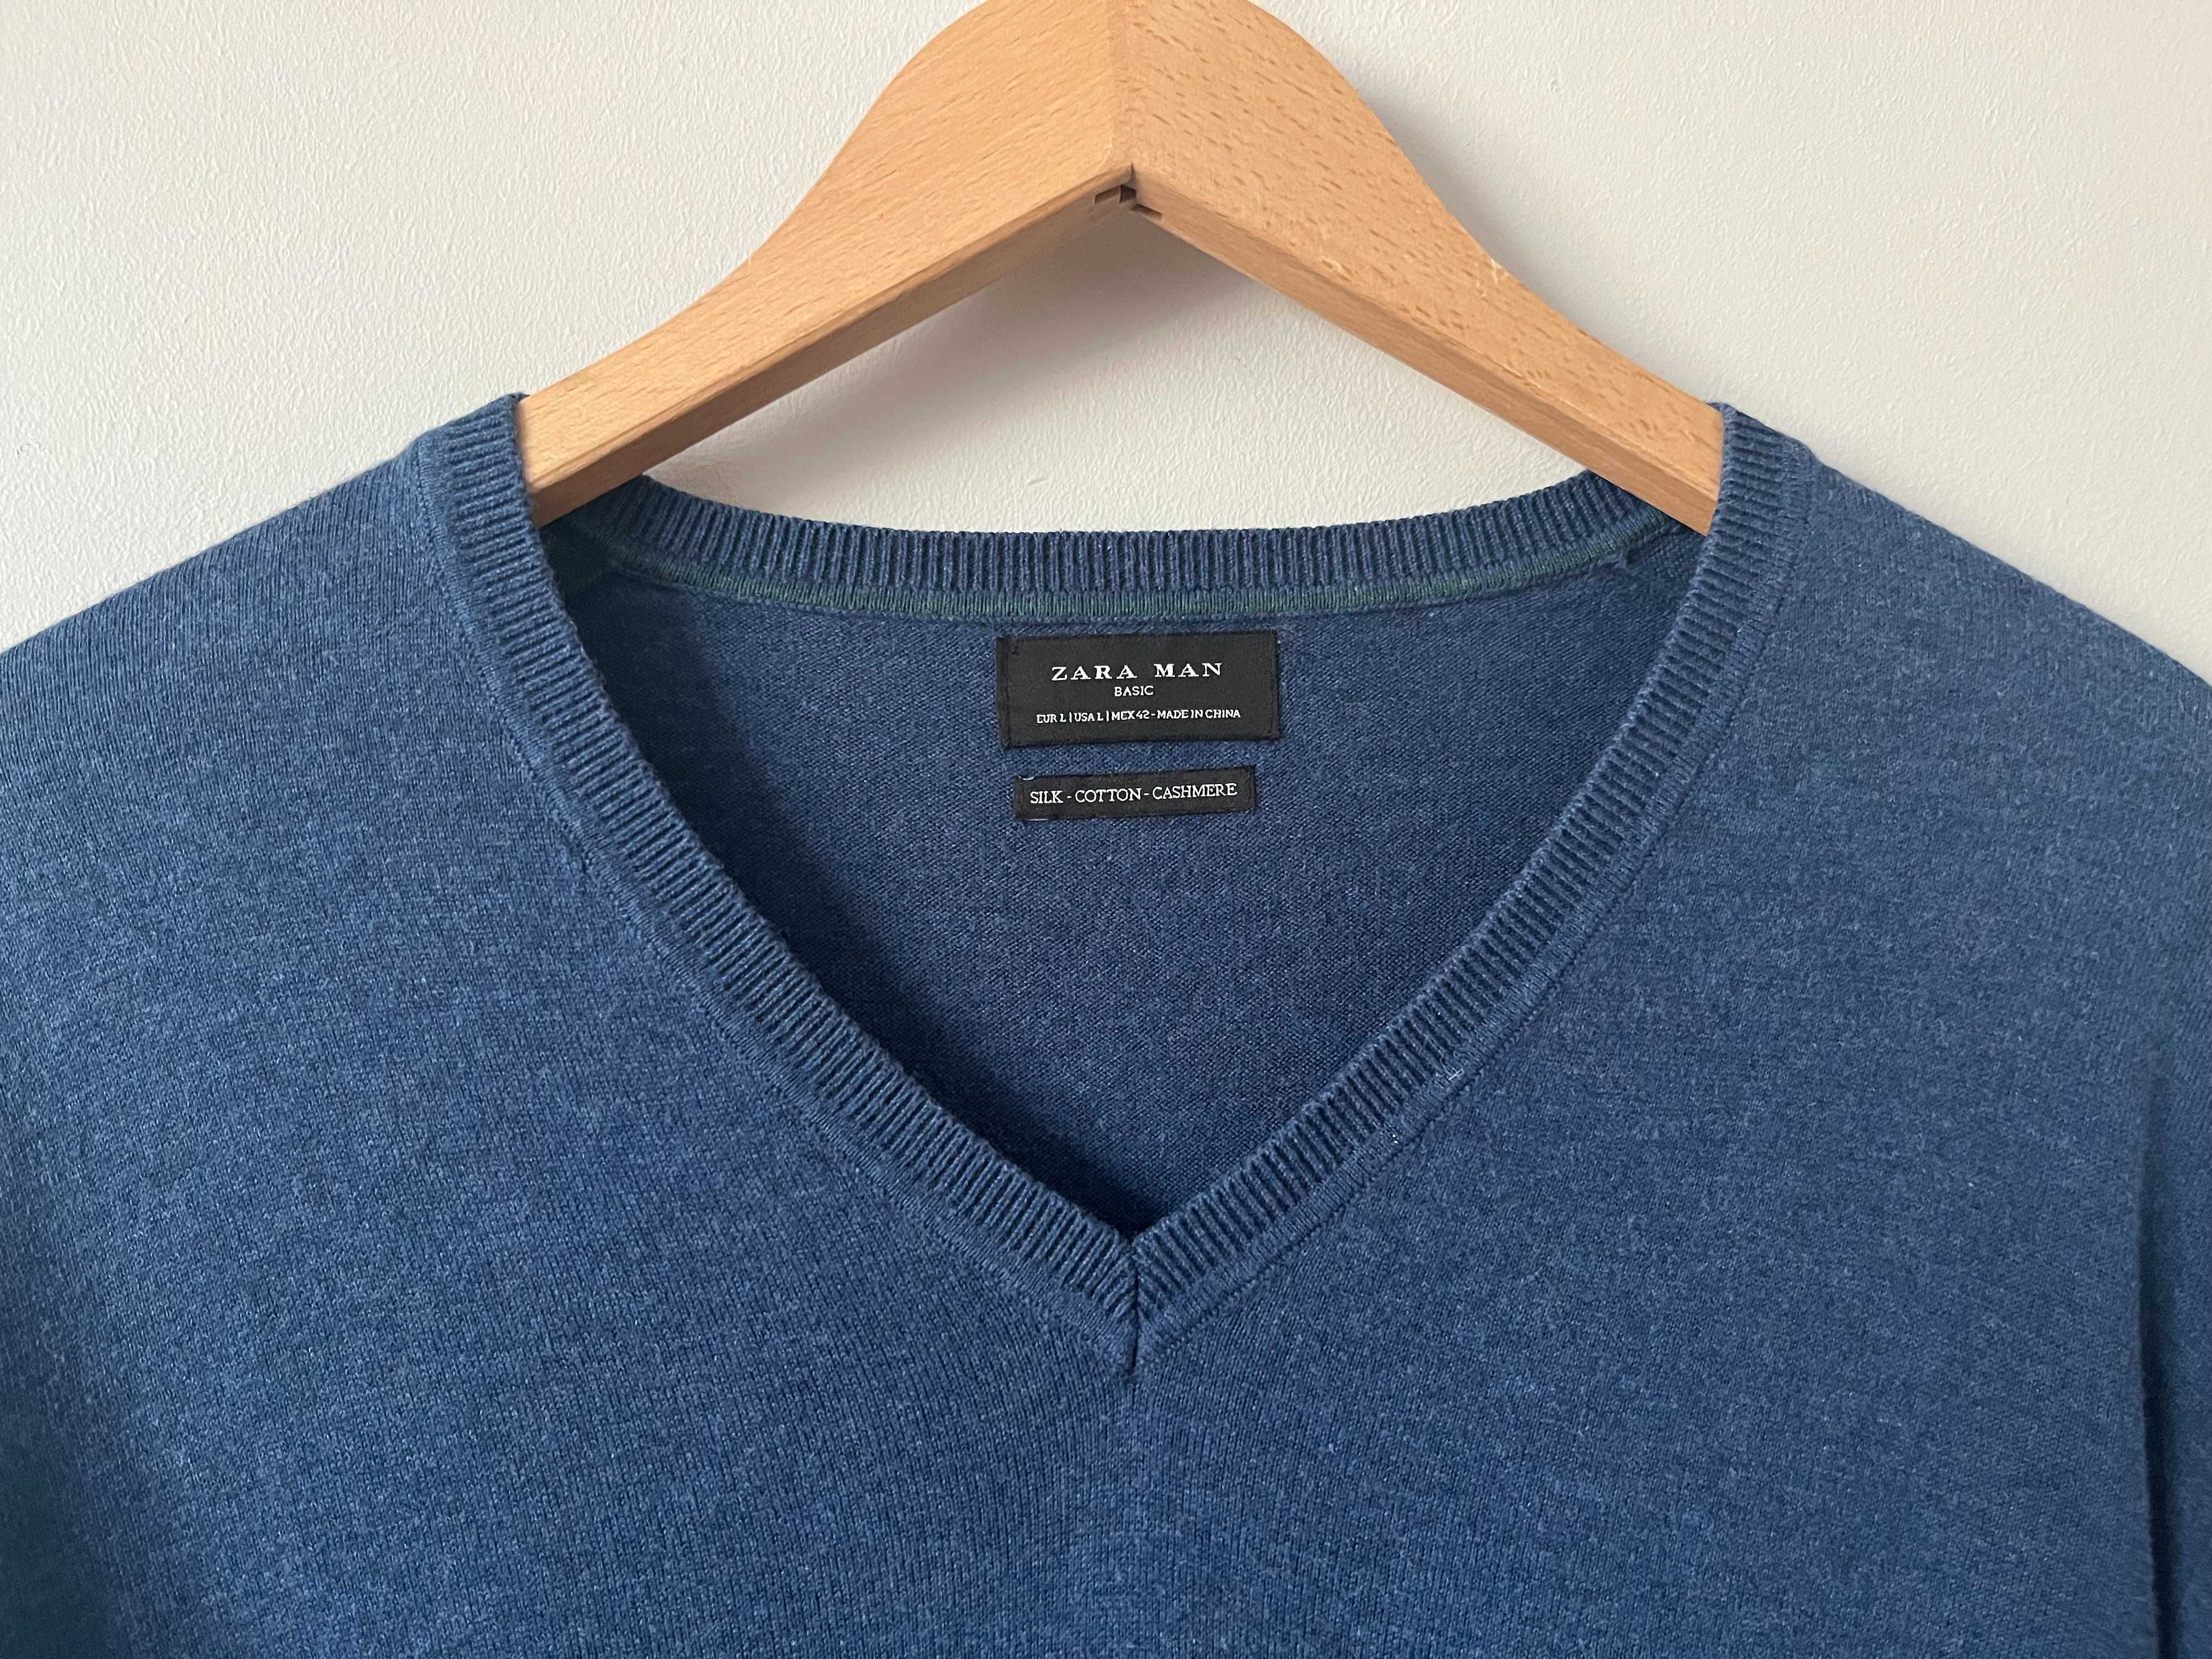 Sweter Zara rozmiar L